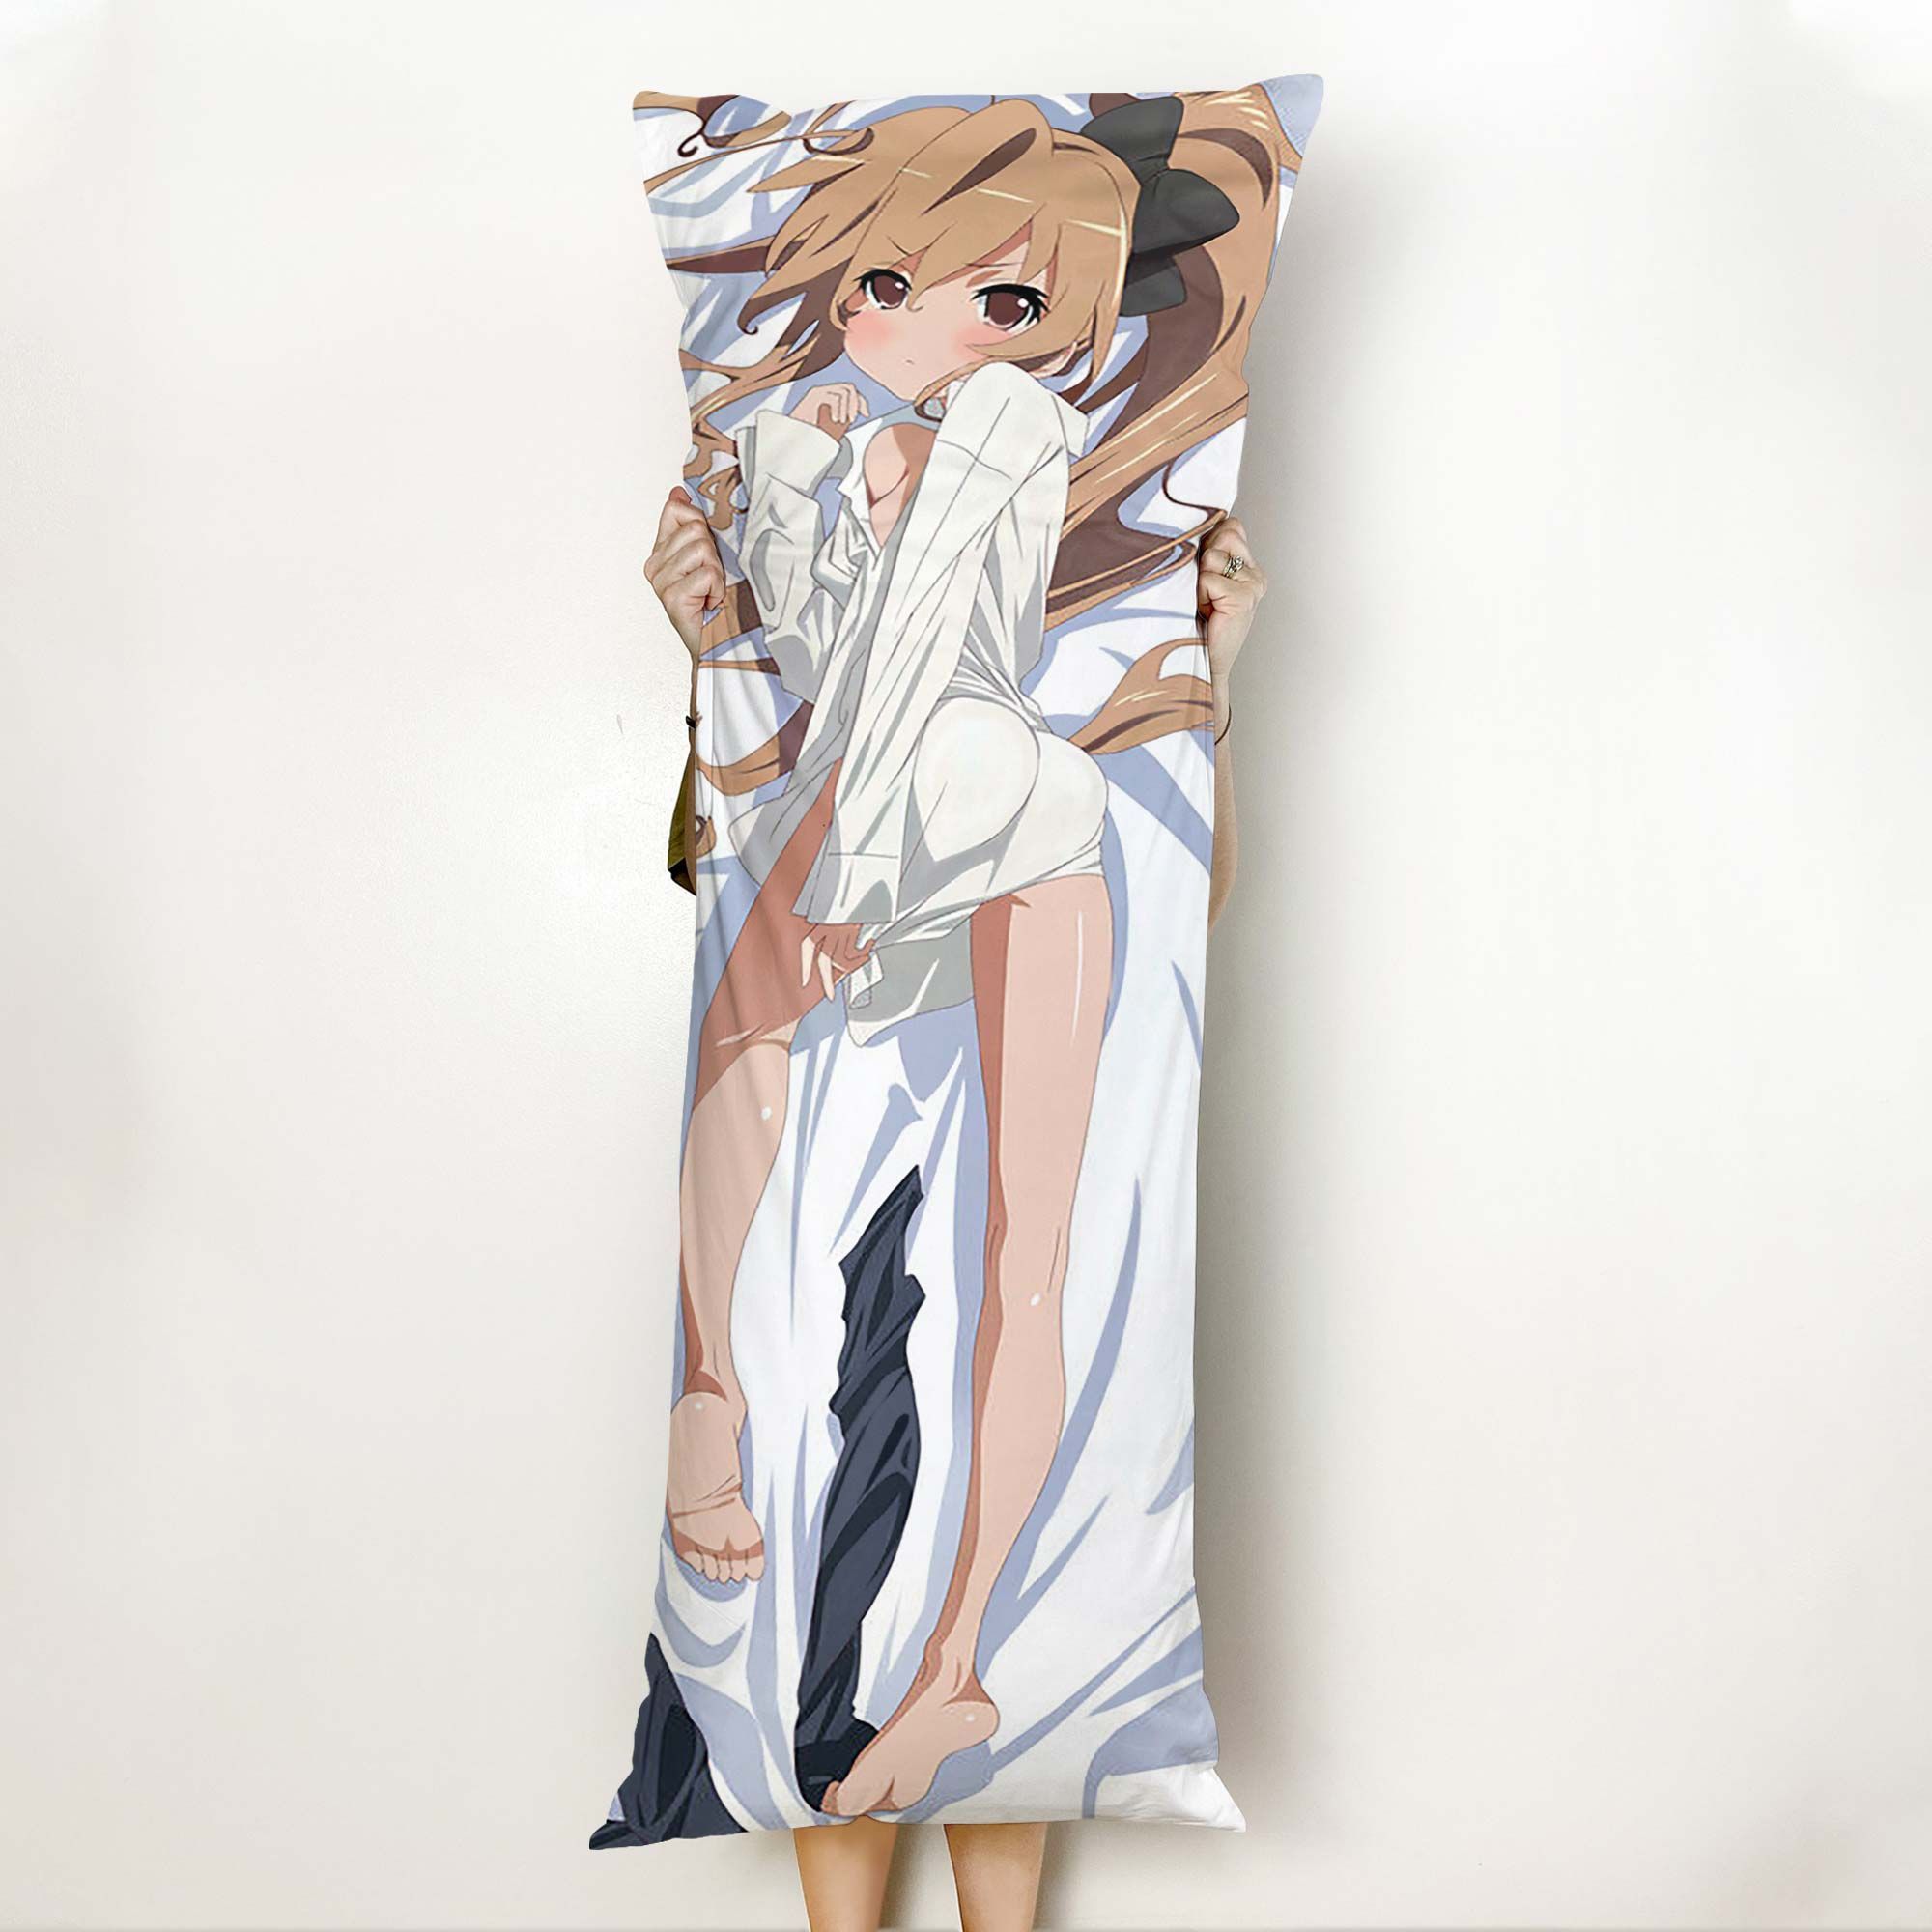 Toradora Taiga Aisaka Body Pillow Cover Anime Gifts Idea For Otaku Girl Official Merch GO0110